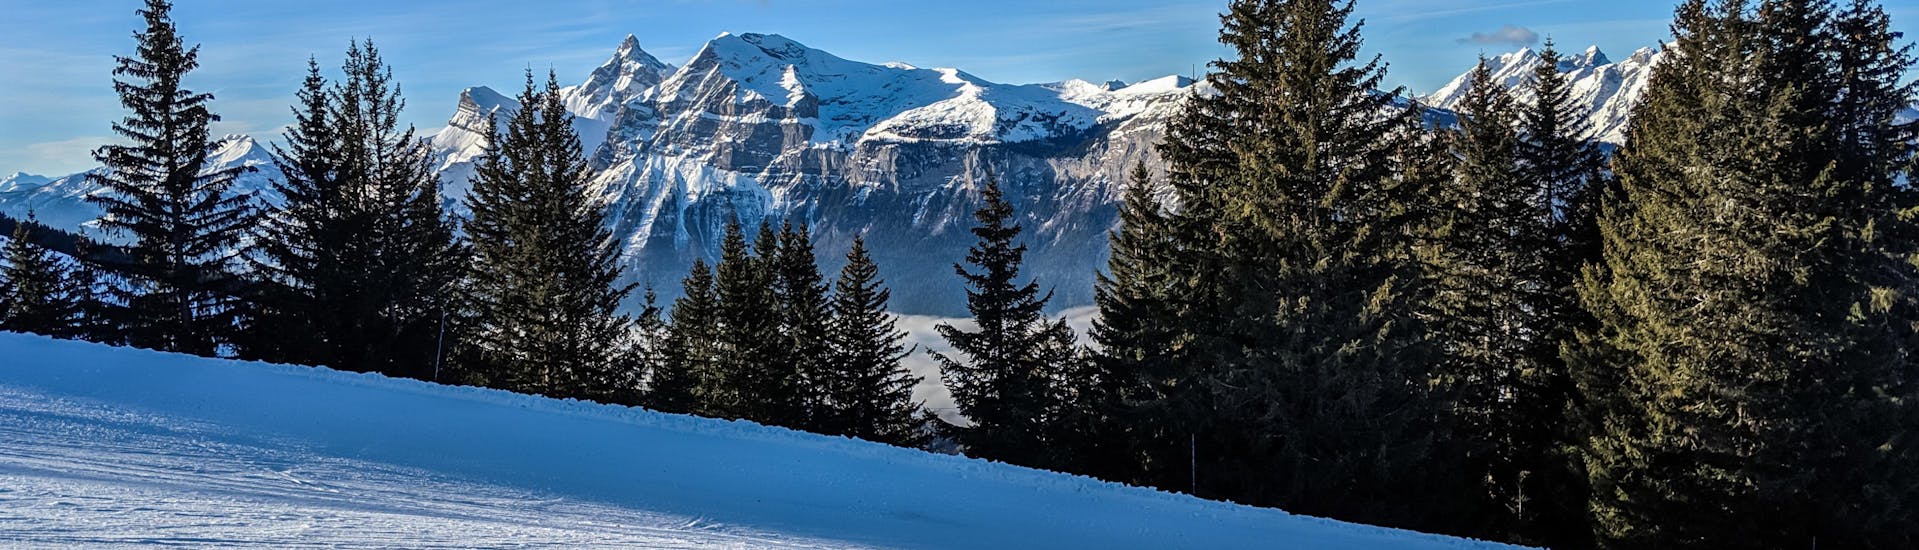 Une image d'une piste de ski fraîche dans la station de ski française Les Carroz, un endroit apprécié pour aller skier dans le Grand Massif où les visiteurs peuvent réserver des cours de ski avec l'une des écoles de ski de la région.